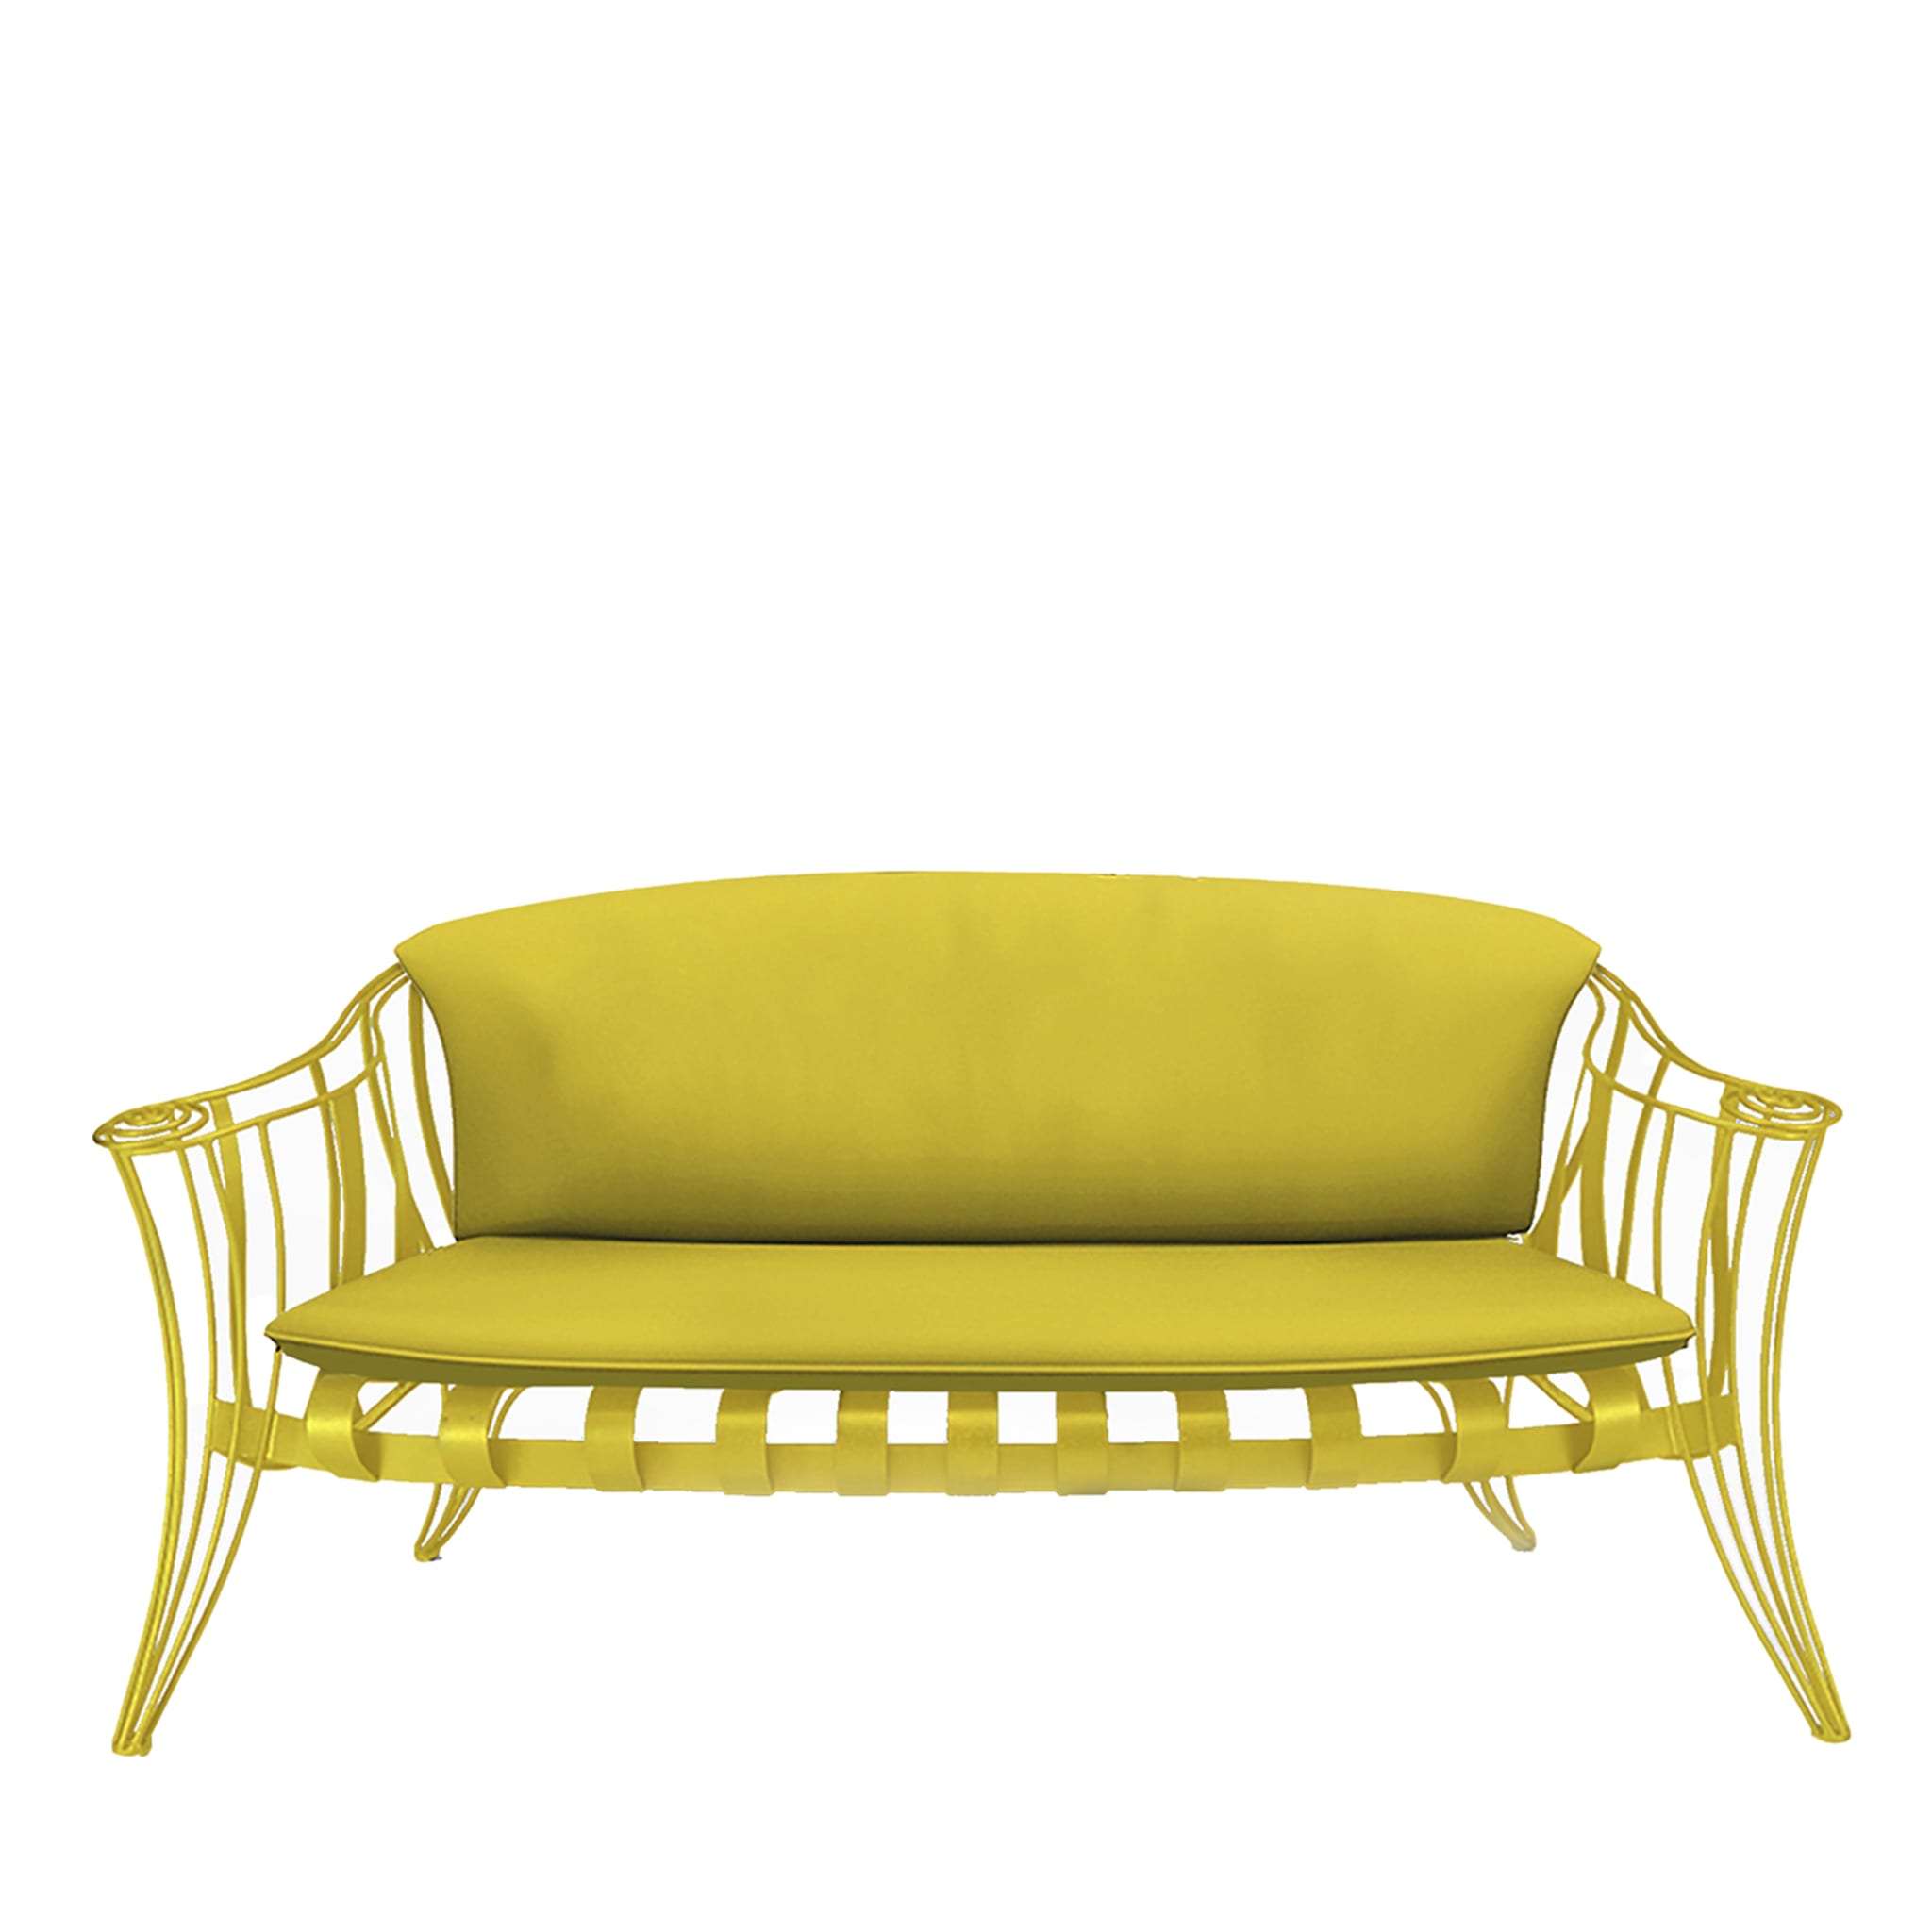 Opus Garden Yellow Sofa by Carlo Rampazzi - Main view